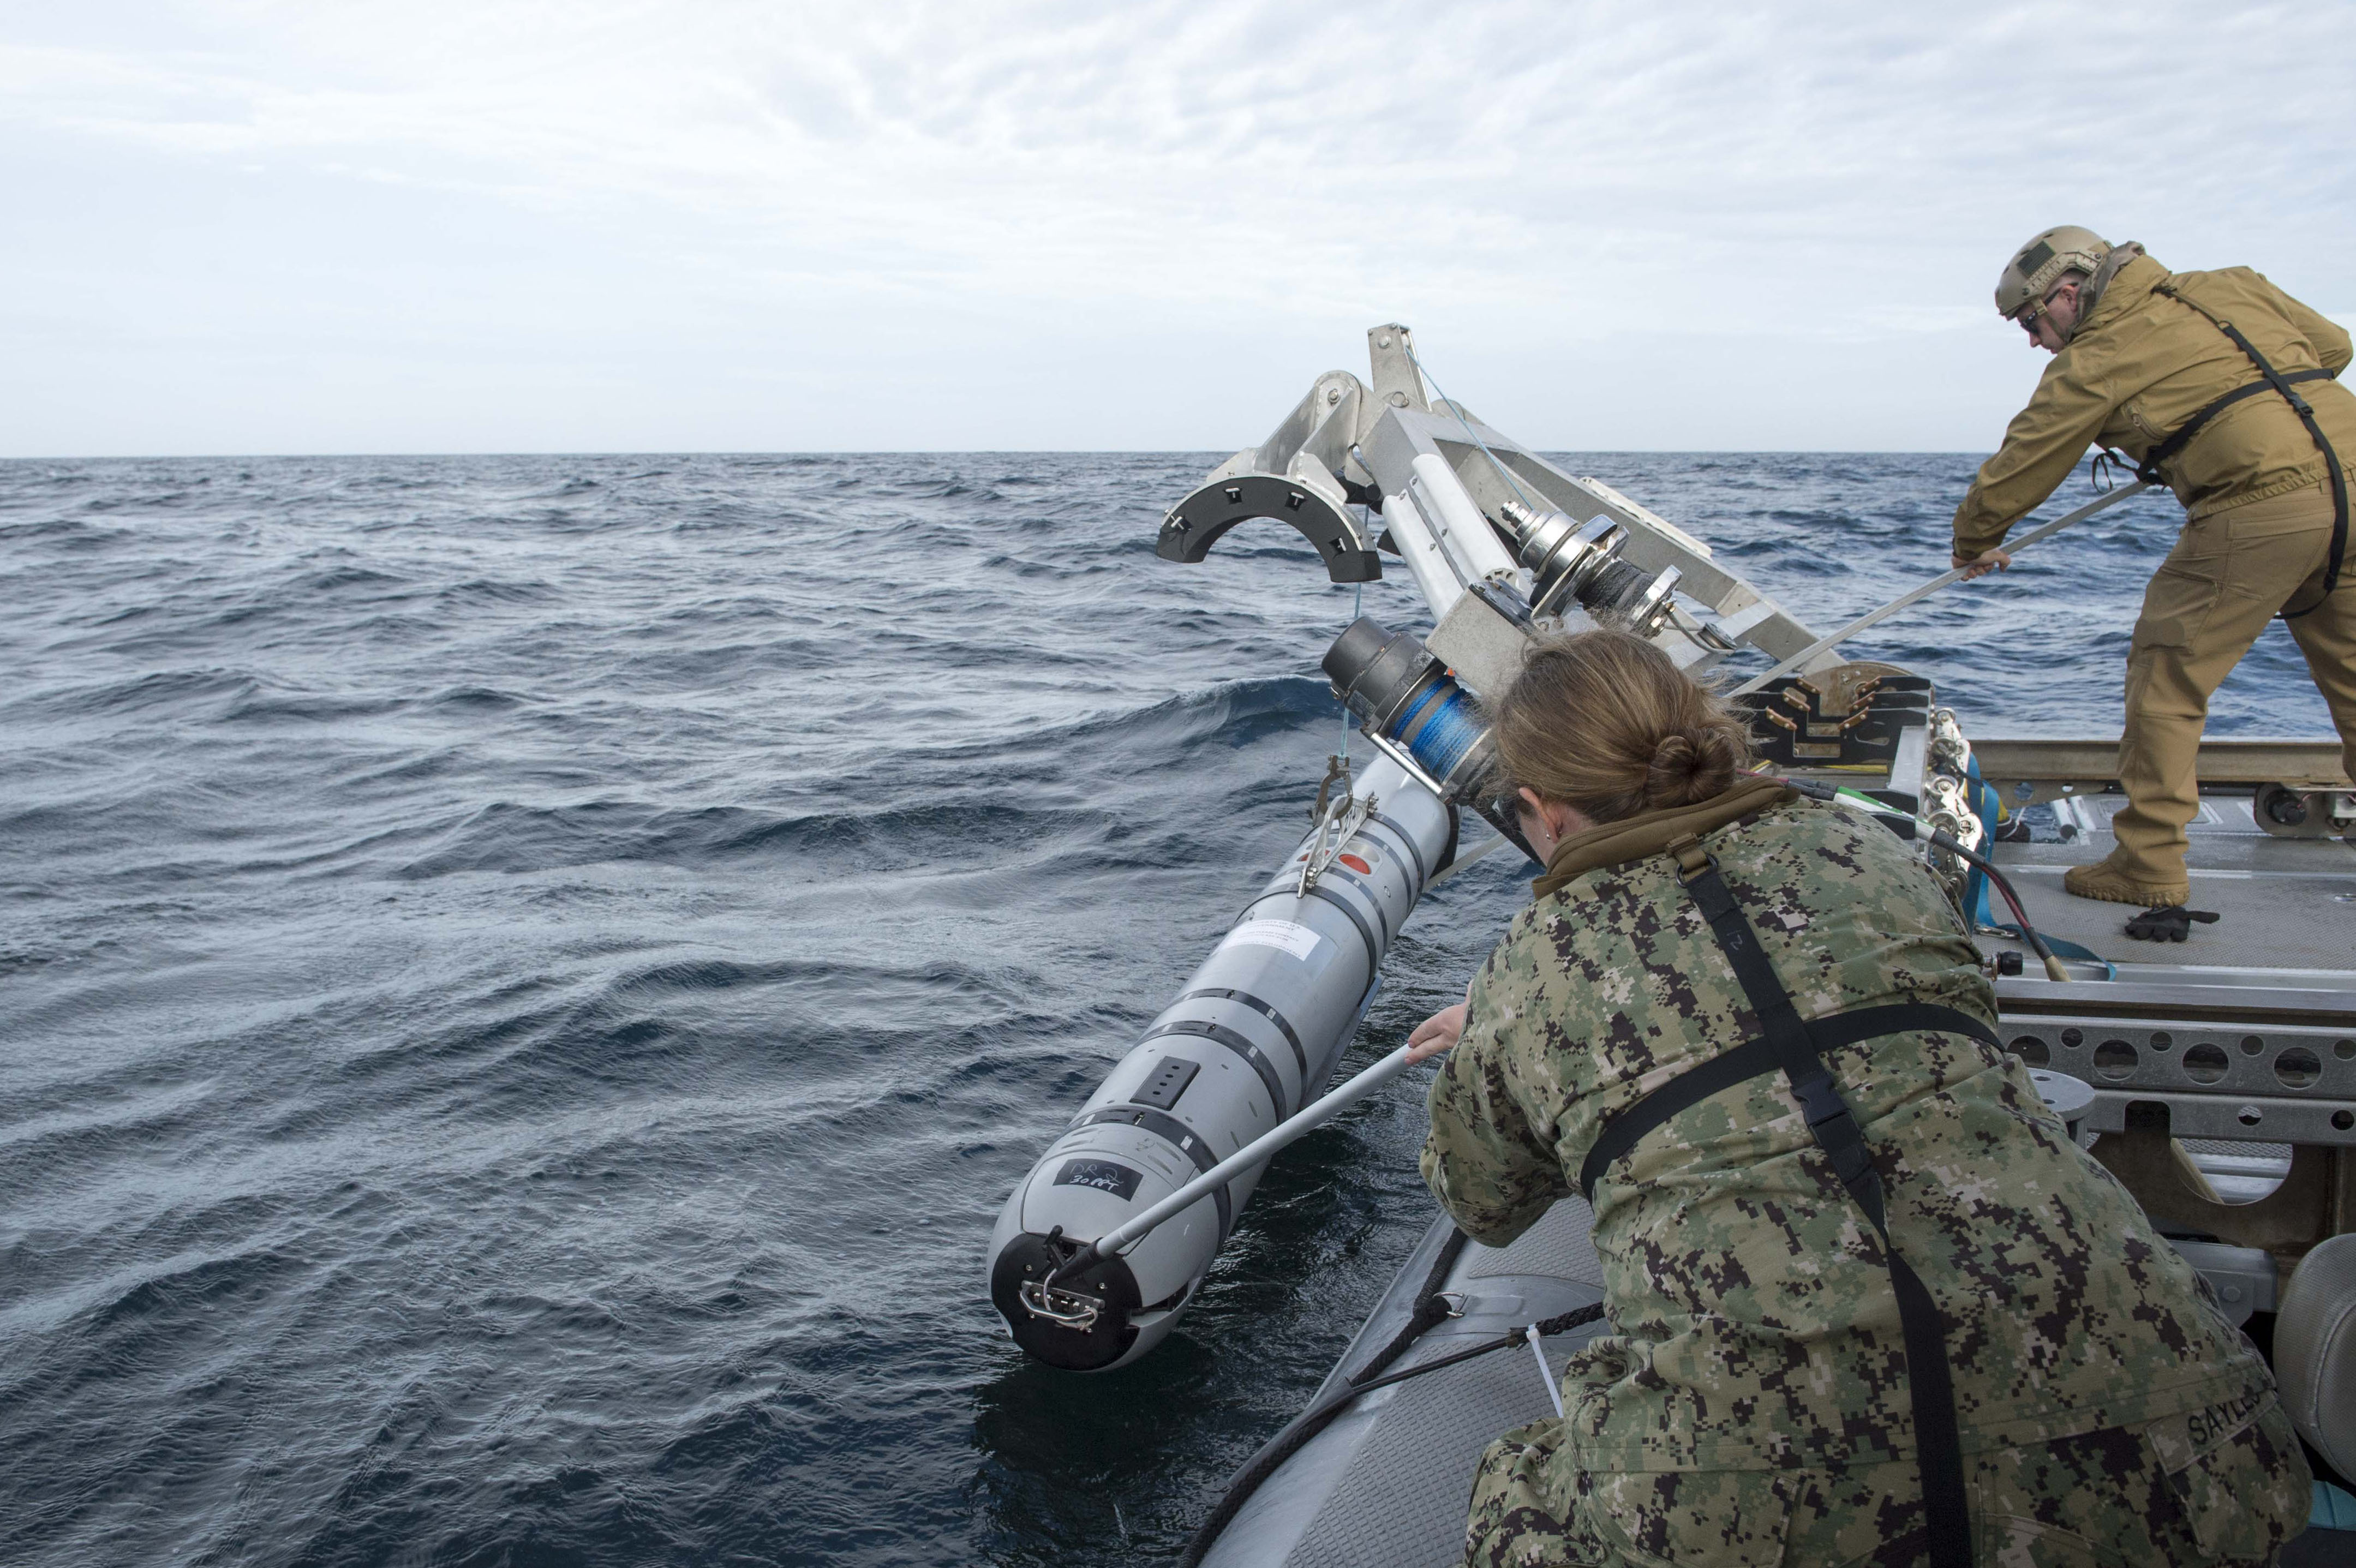 Спуск в воду автономного подводного поисково-спасательного аппарата ВМС США Mk18 Mod 2, фото сделано 6 ноября 2018 года в Атлантическом океане